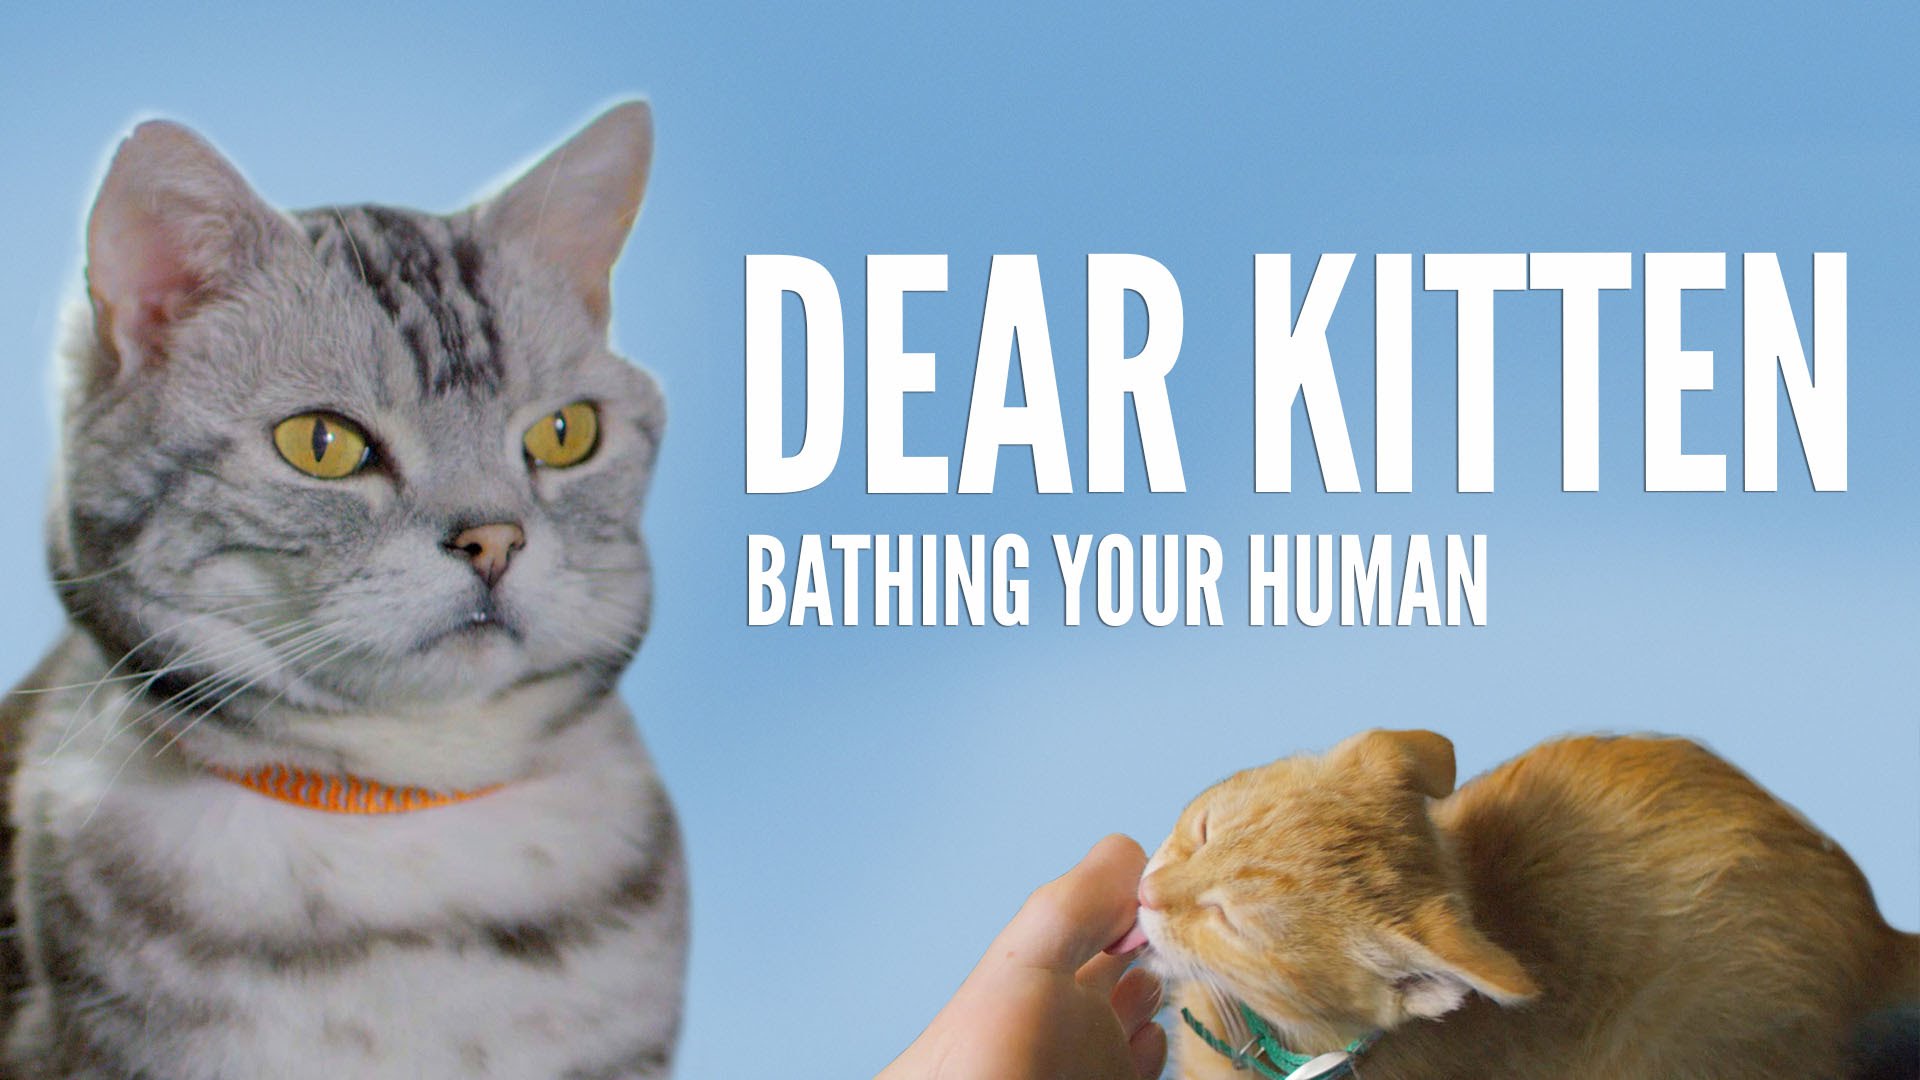 Dear Kitten: Bathing Your Human